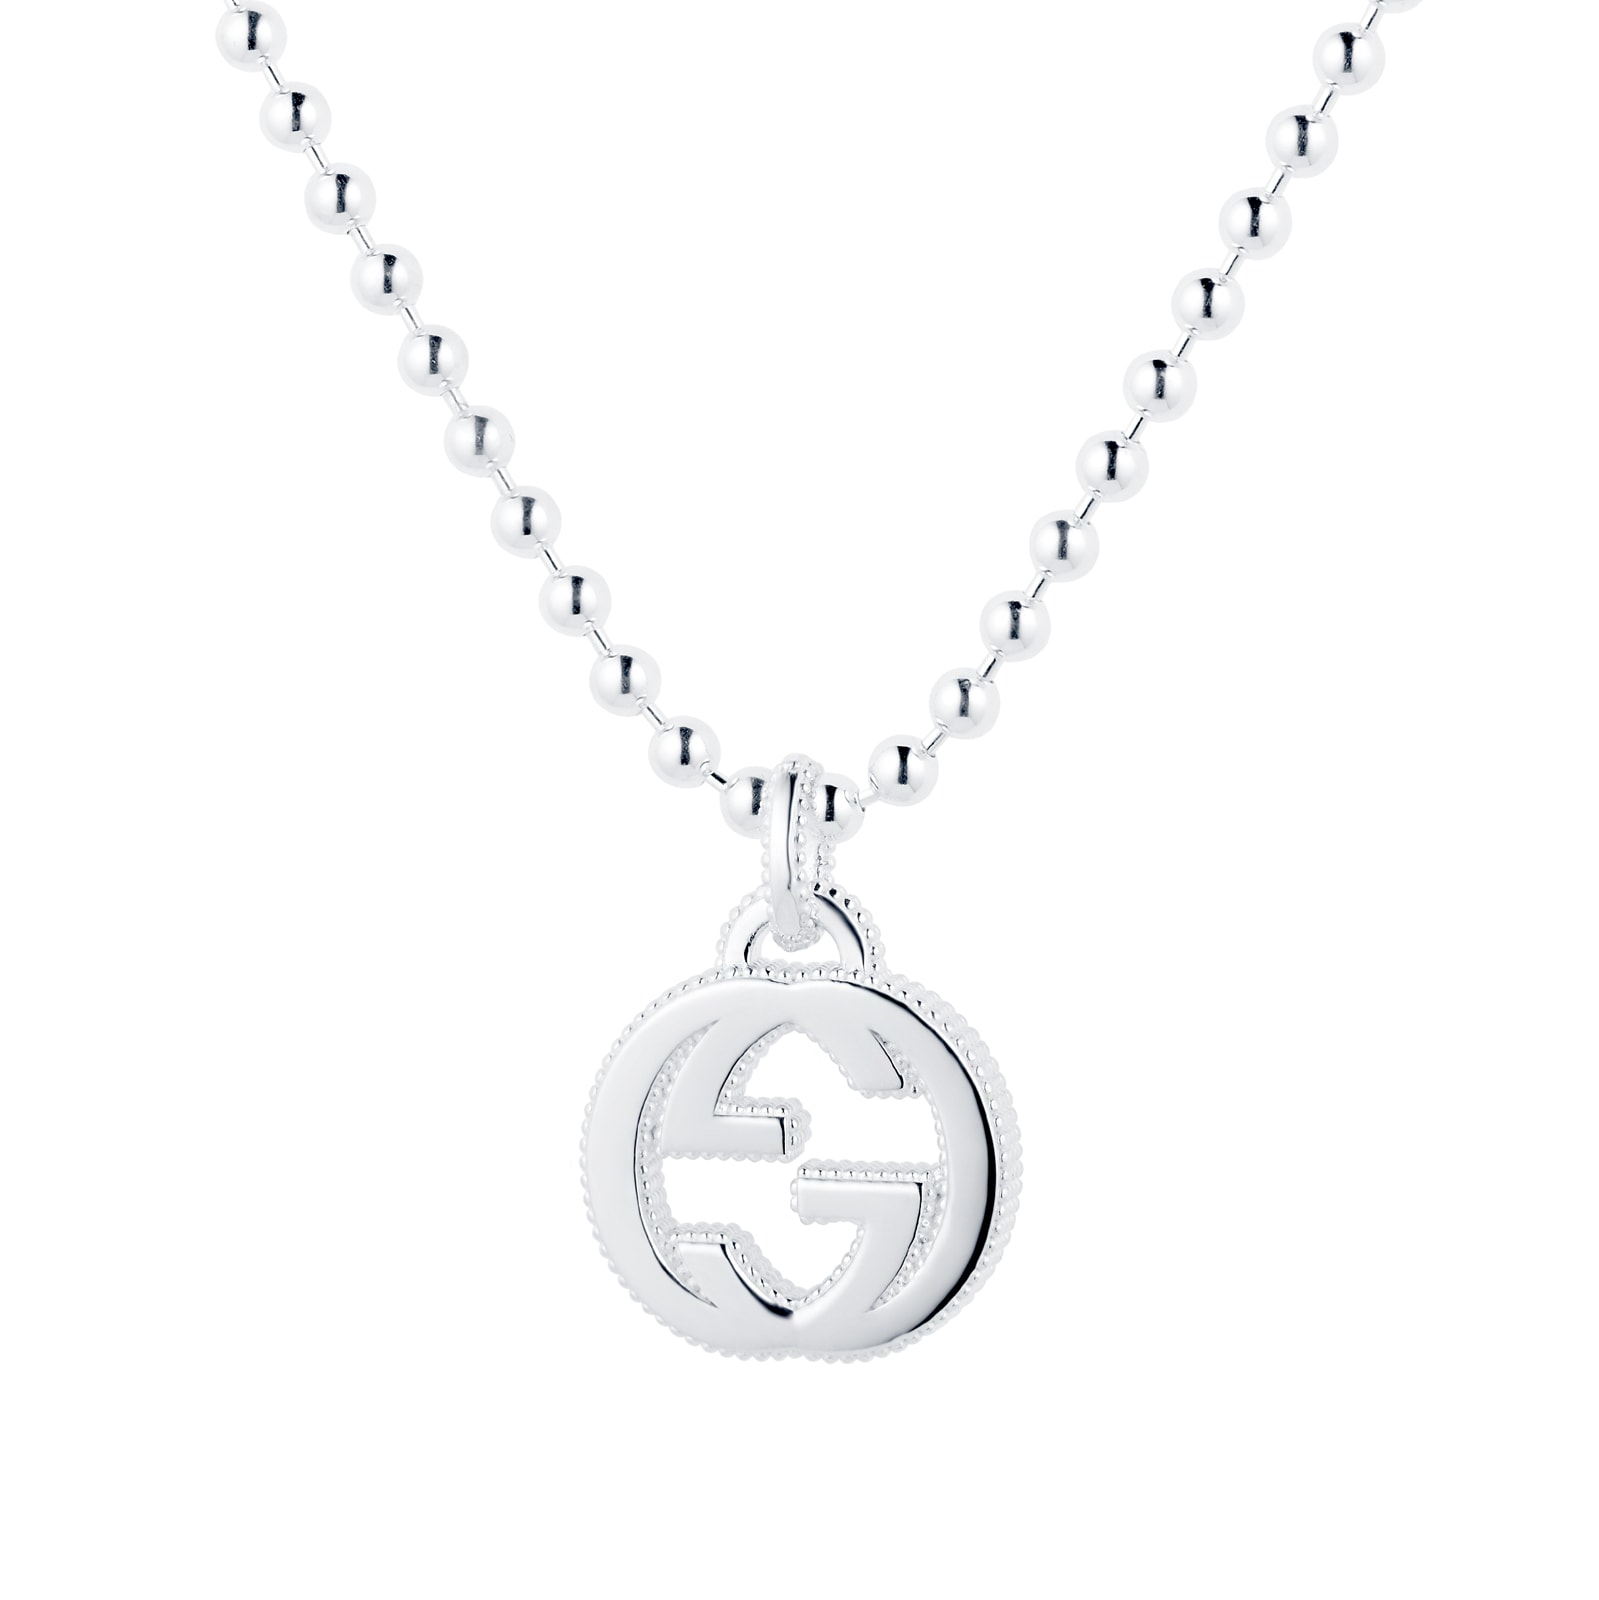 Gucci Interlocking G necklace in silver YBB47921700100U | Goldsmiths